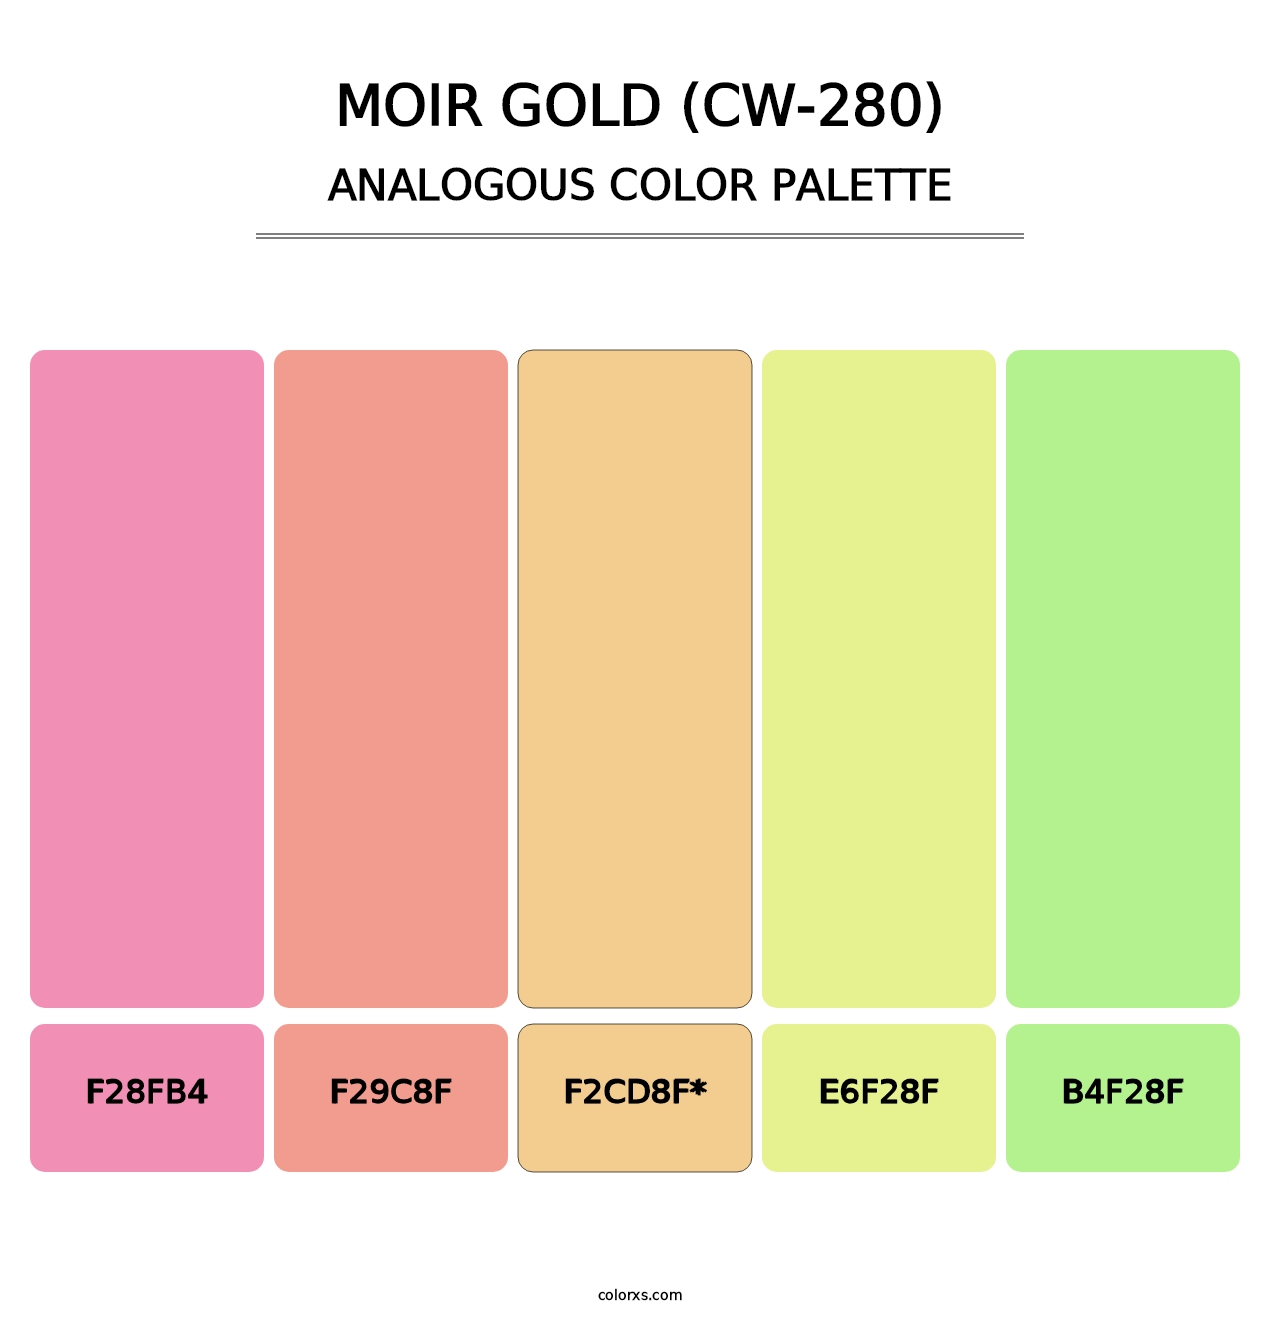 Moir Gold (CW-280) - Analogous Color Palette